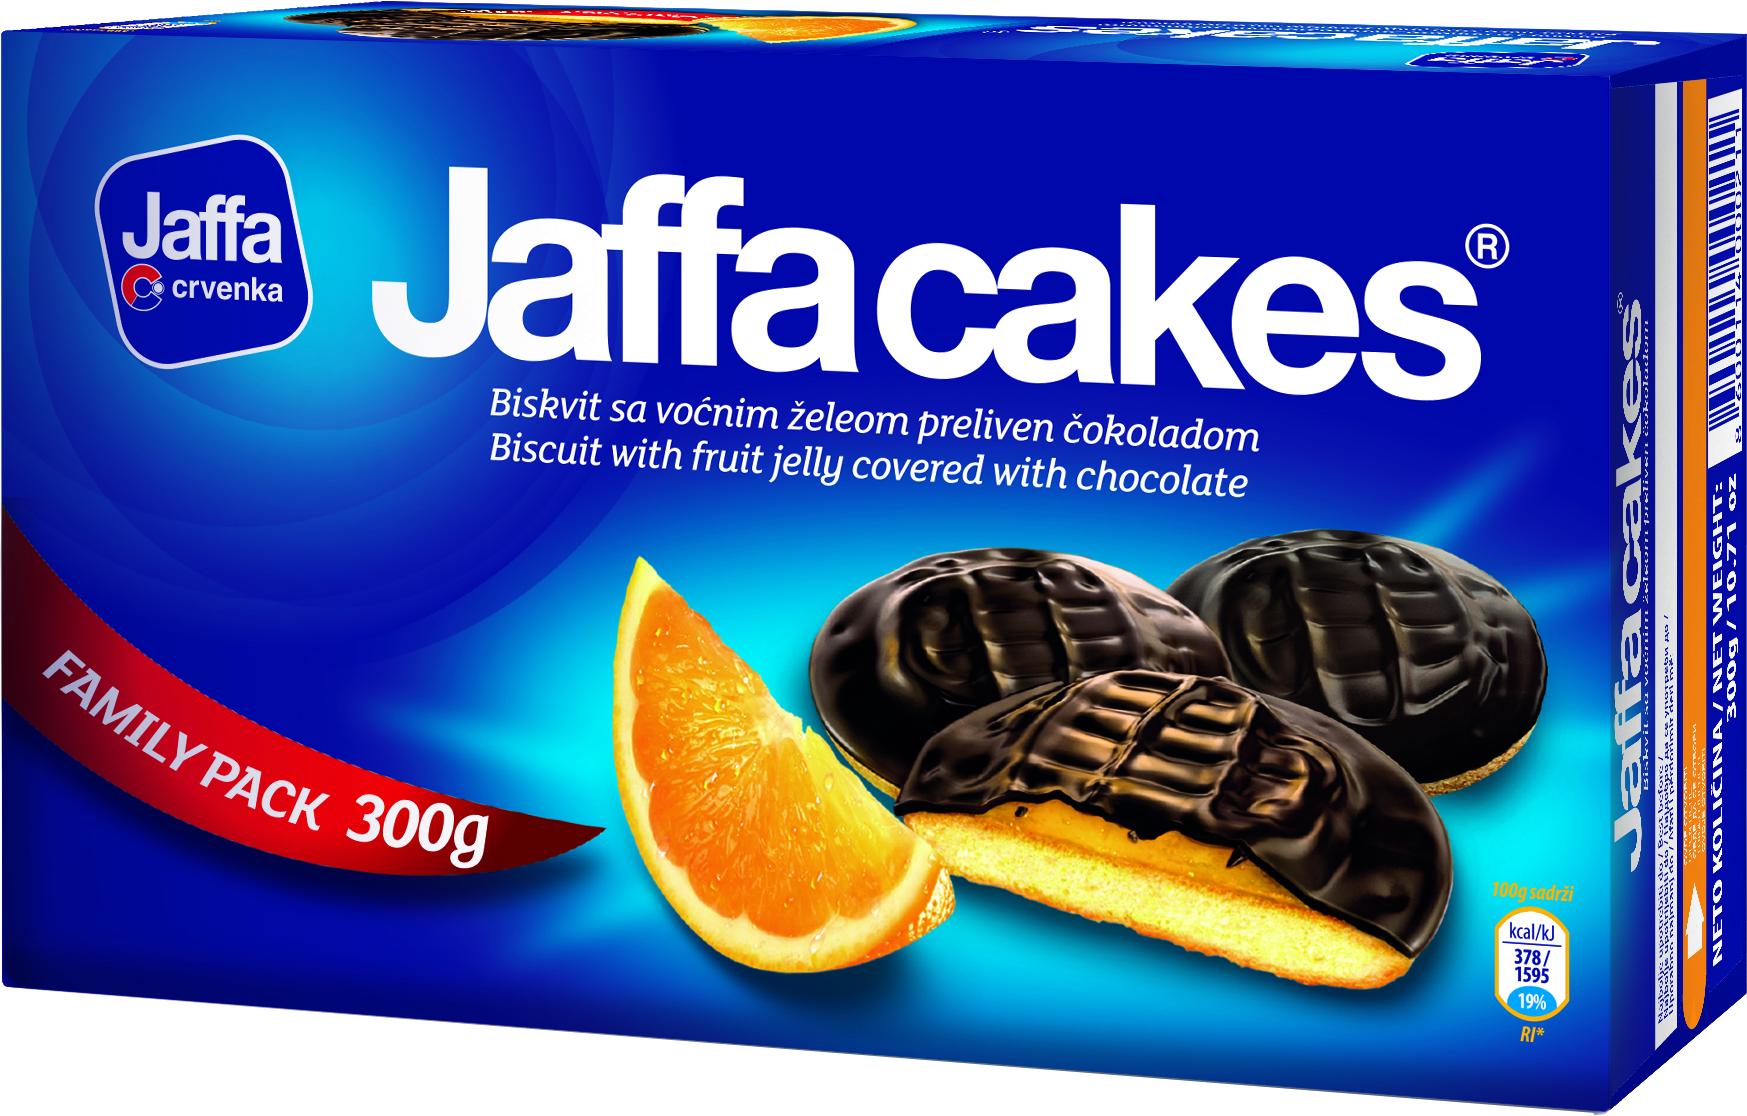 Slika za Biskvit Jaffa cakes 300g